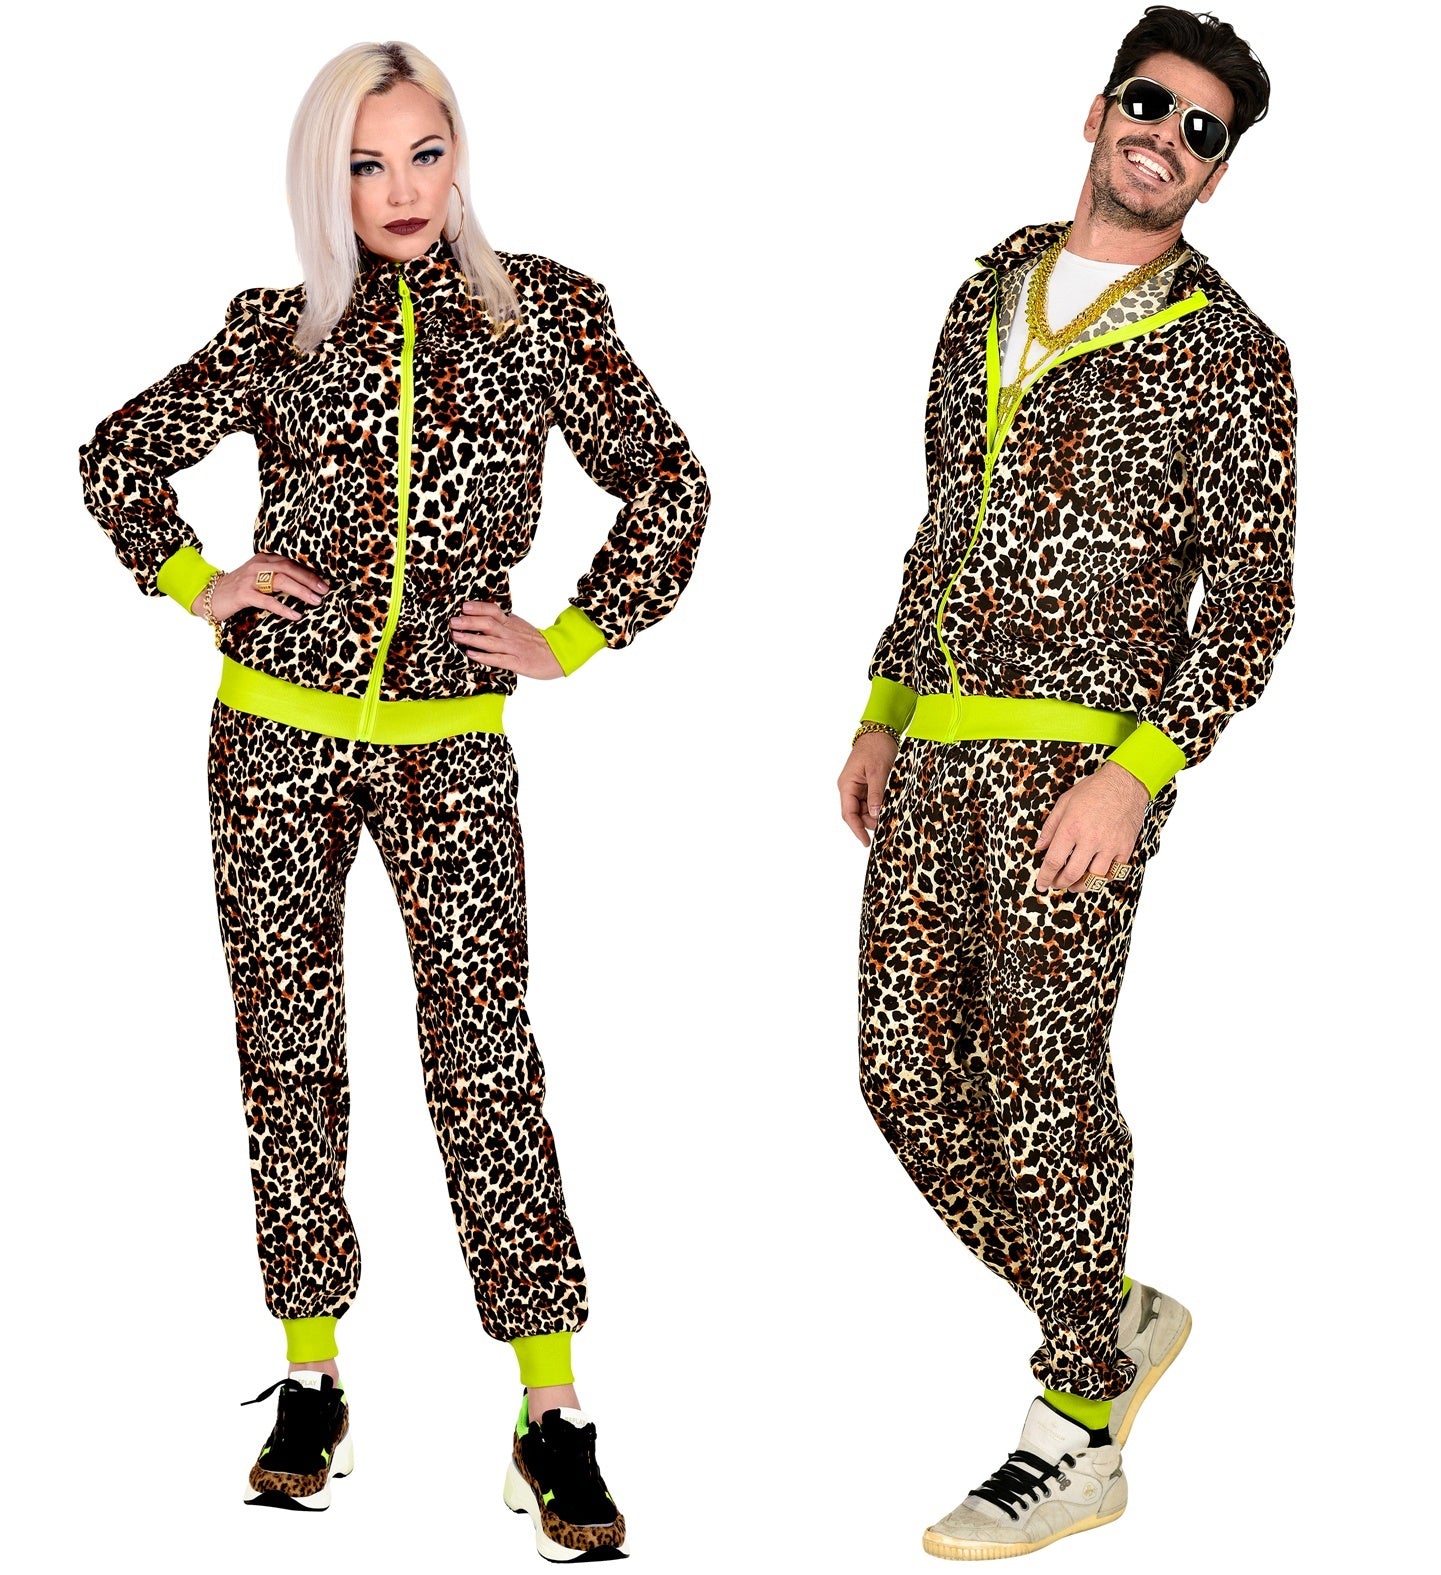 WIDMANN - Jaren '80 luipaard trainingspak kostuum voor volwassenen - M